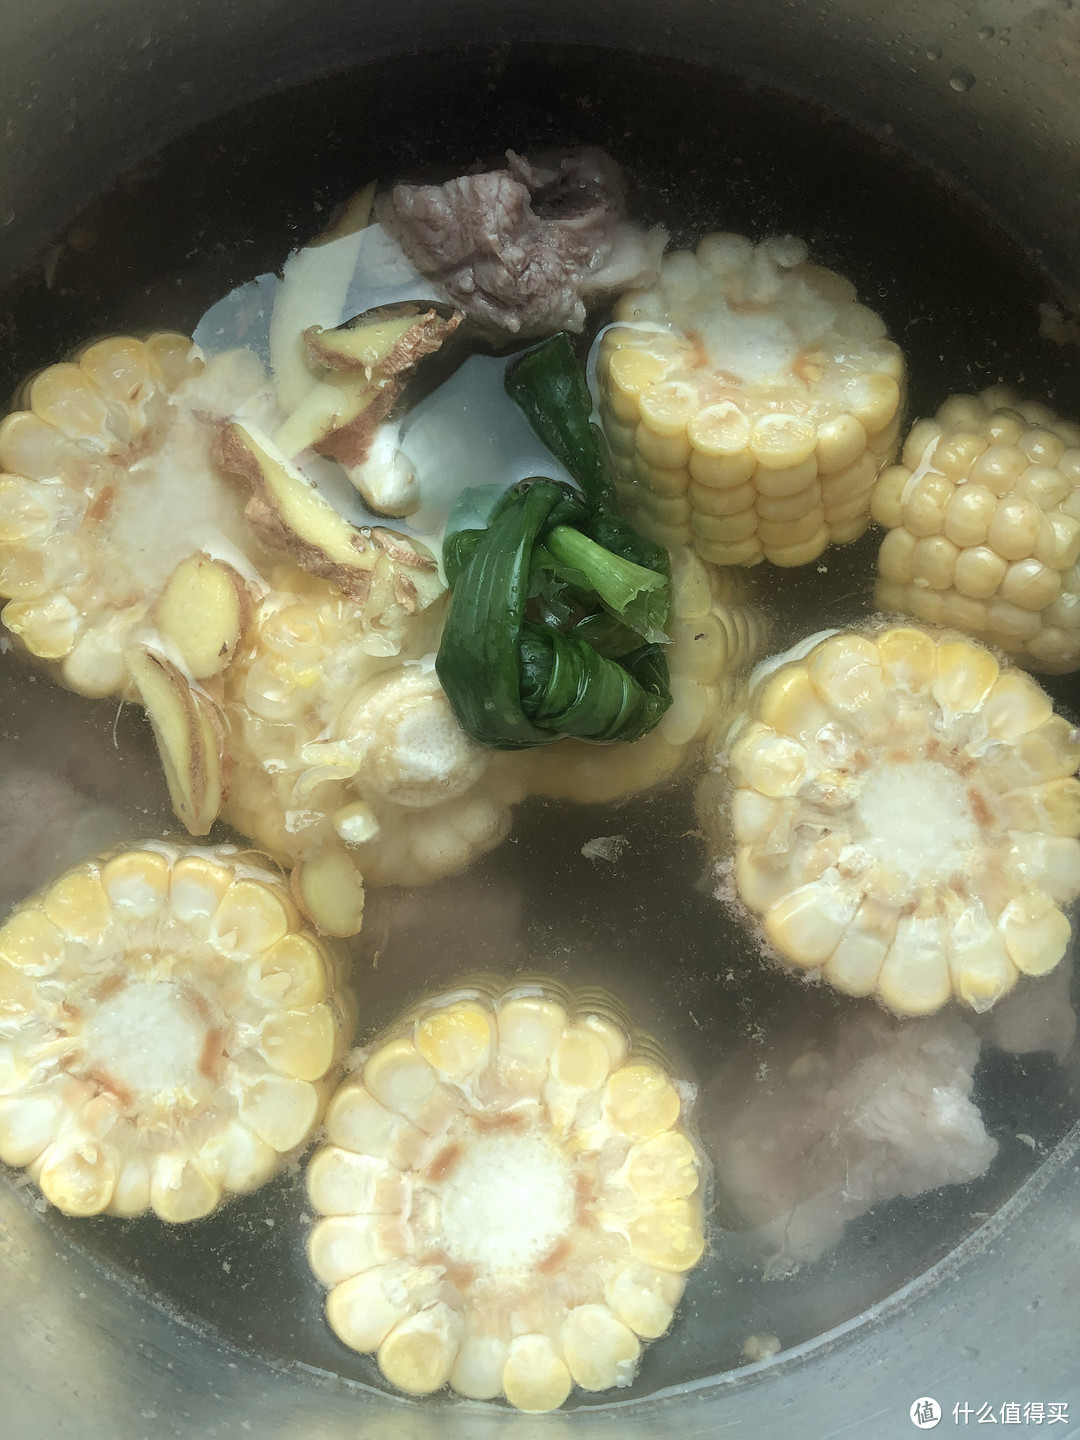 自制闽式玉米排骨汤，搭配新鲜食材烹饪的美食才是舌尖上首选（附美食烹饪流程）